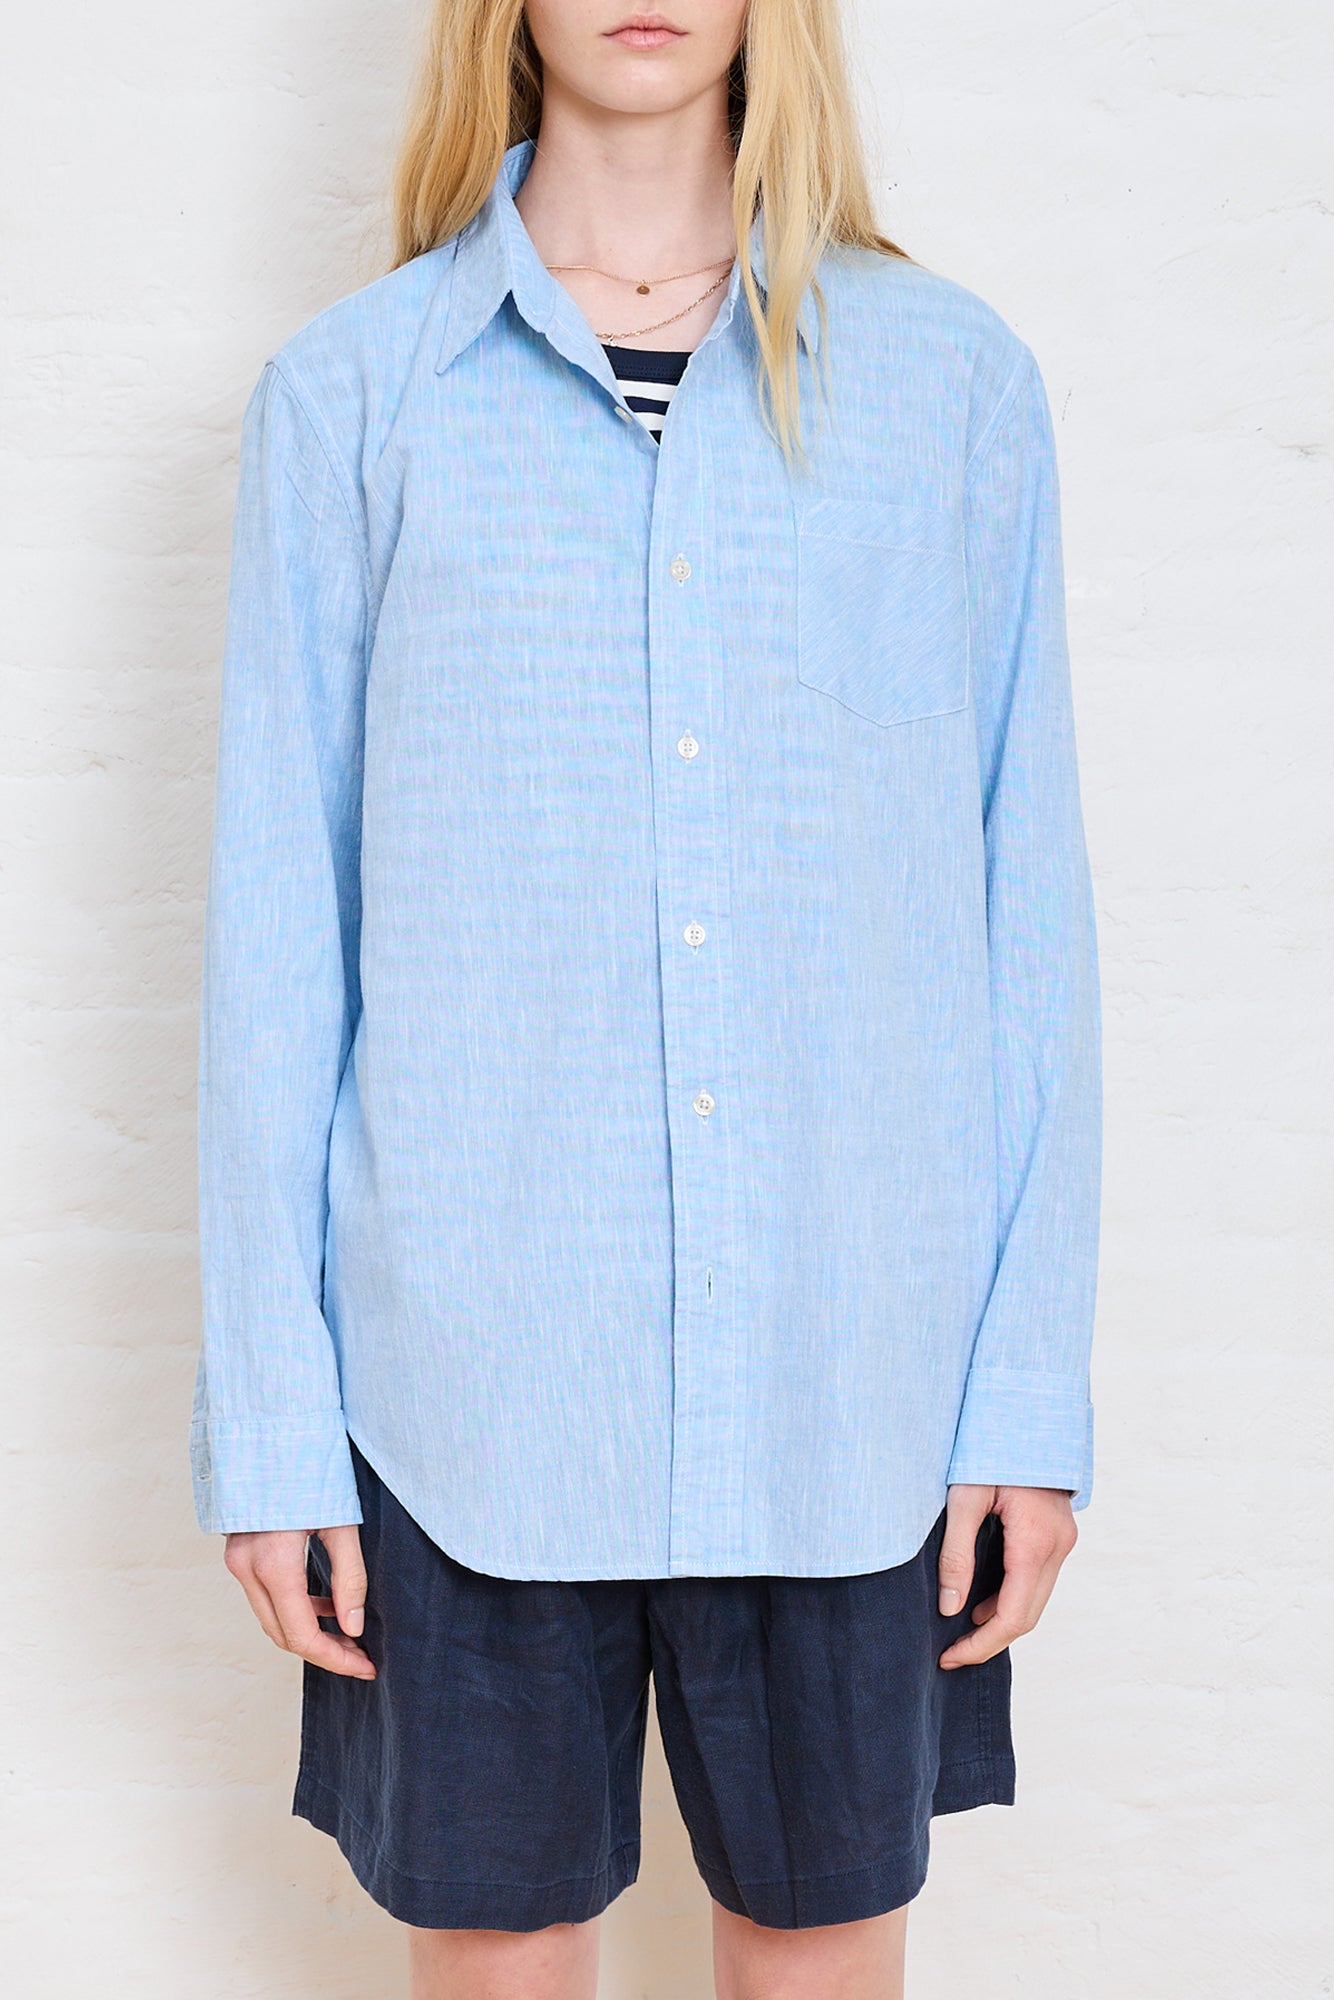 Boyfriend Shirt - Blue Cotton/ Linen